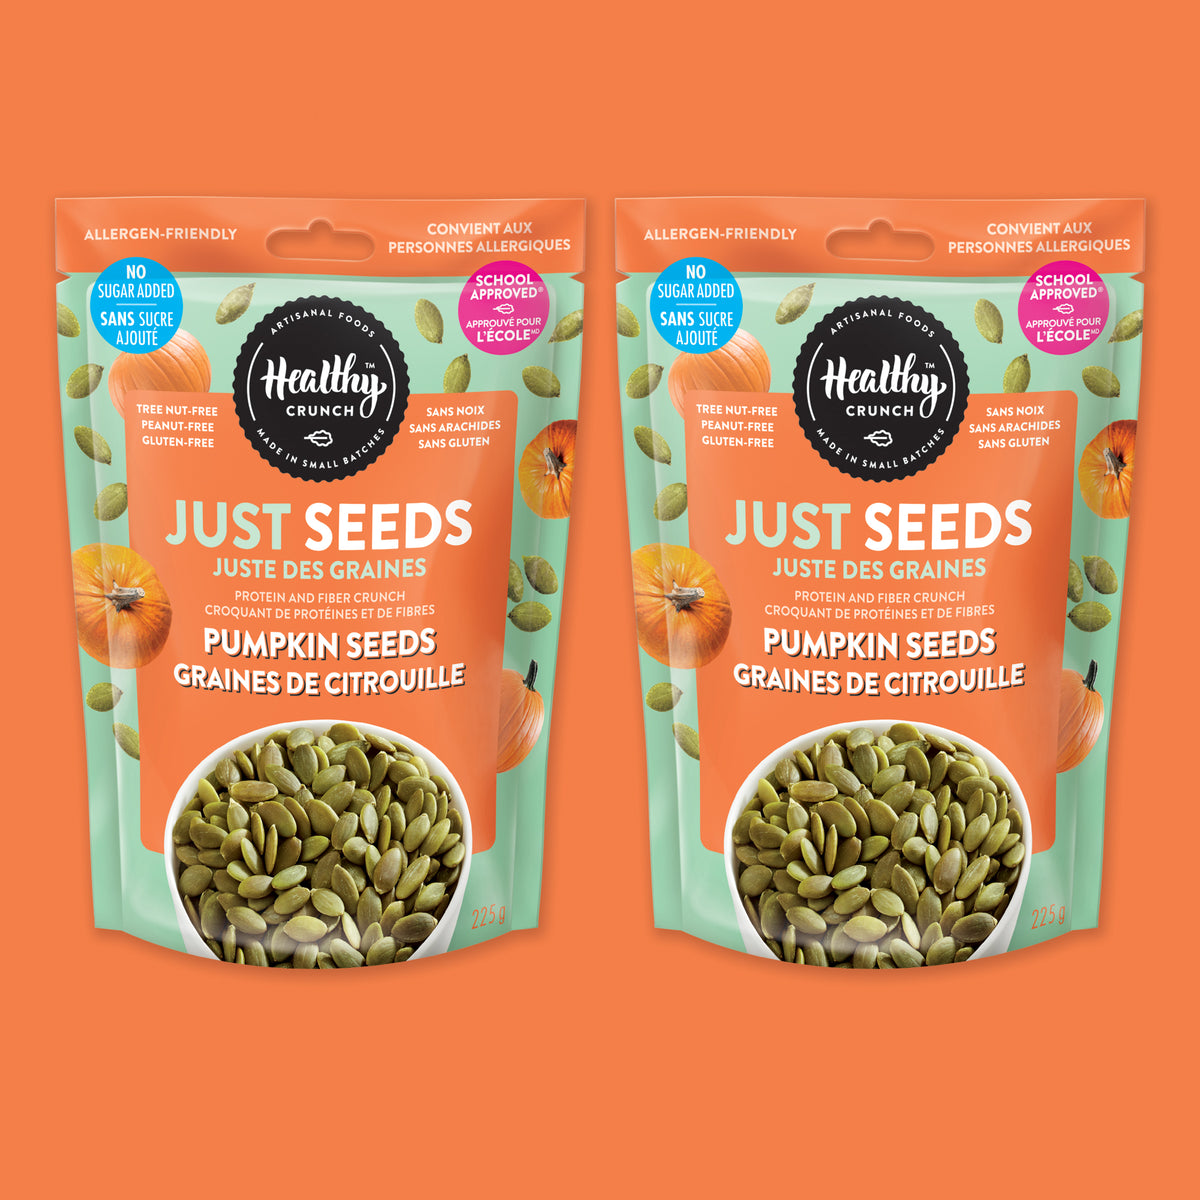 Pumpkin Seeds - Just Seeds